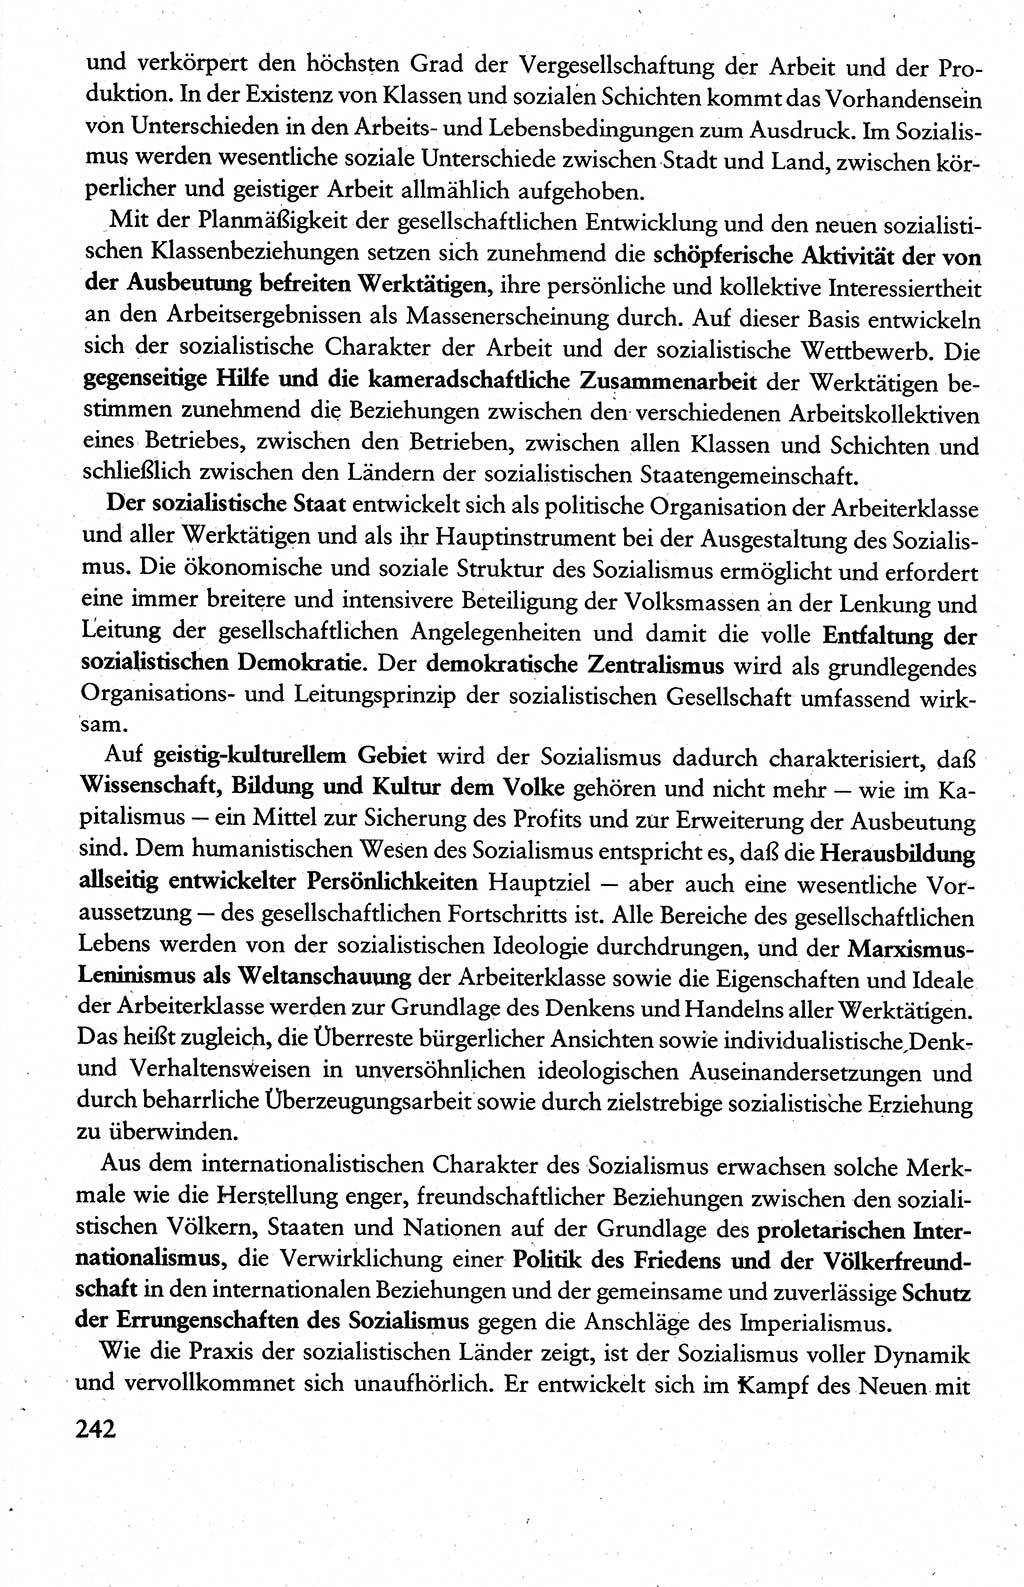 Wissenschaftlicher Kommunismus [Deutsche Demokratische Republik (DDR)], Lehrbuch für das marxistisch-leninistische Grundlagenstudium 1983, Seite 242 (Wiss. Komm. DDR Lb. 1983, S. 242)